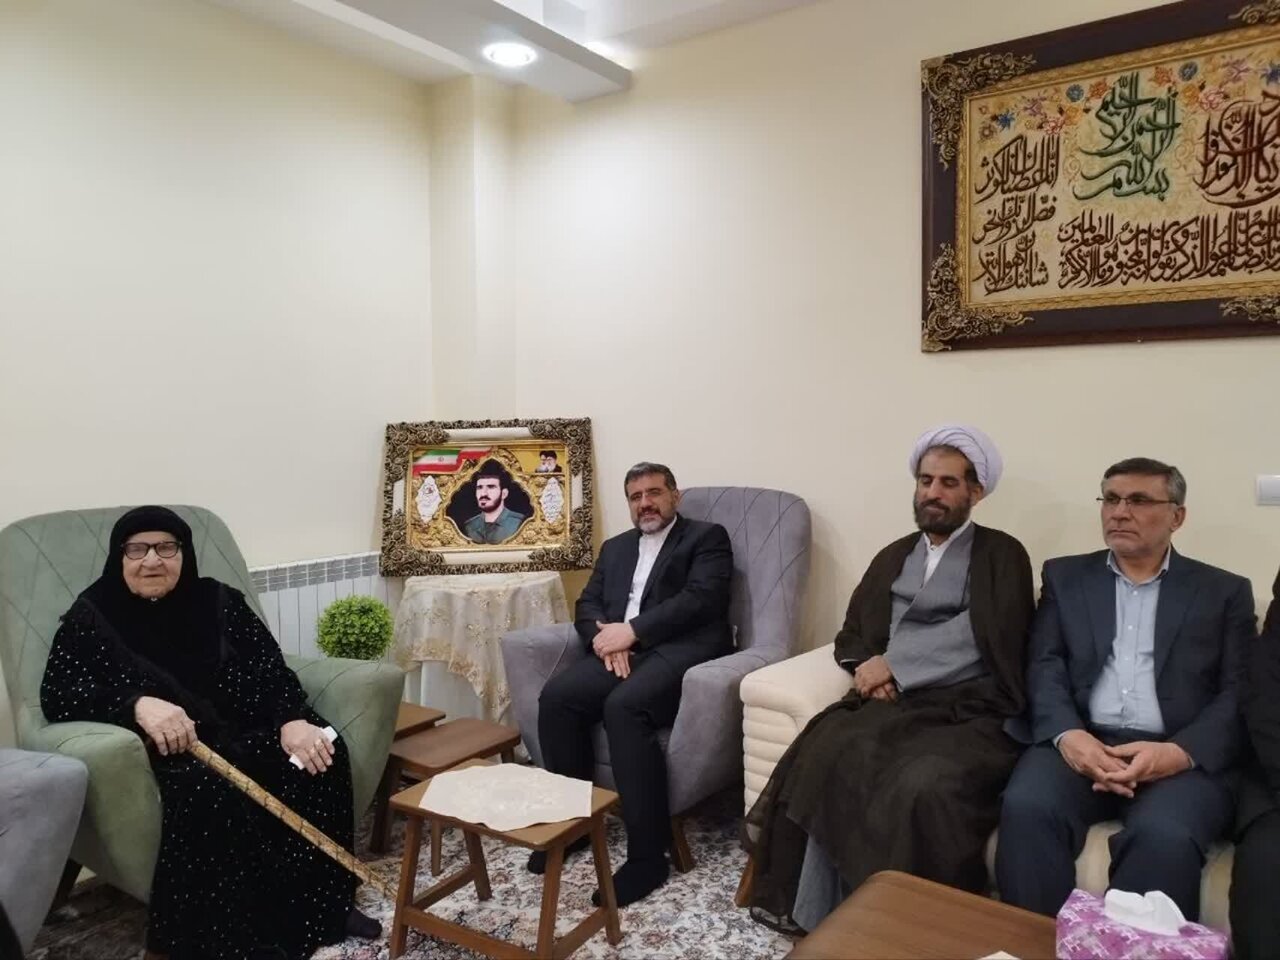 وزیر فرهنگ و ارشاد اسلام با خانواده شهید امامی در ایوان دیدار کرد